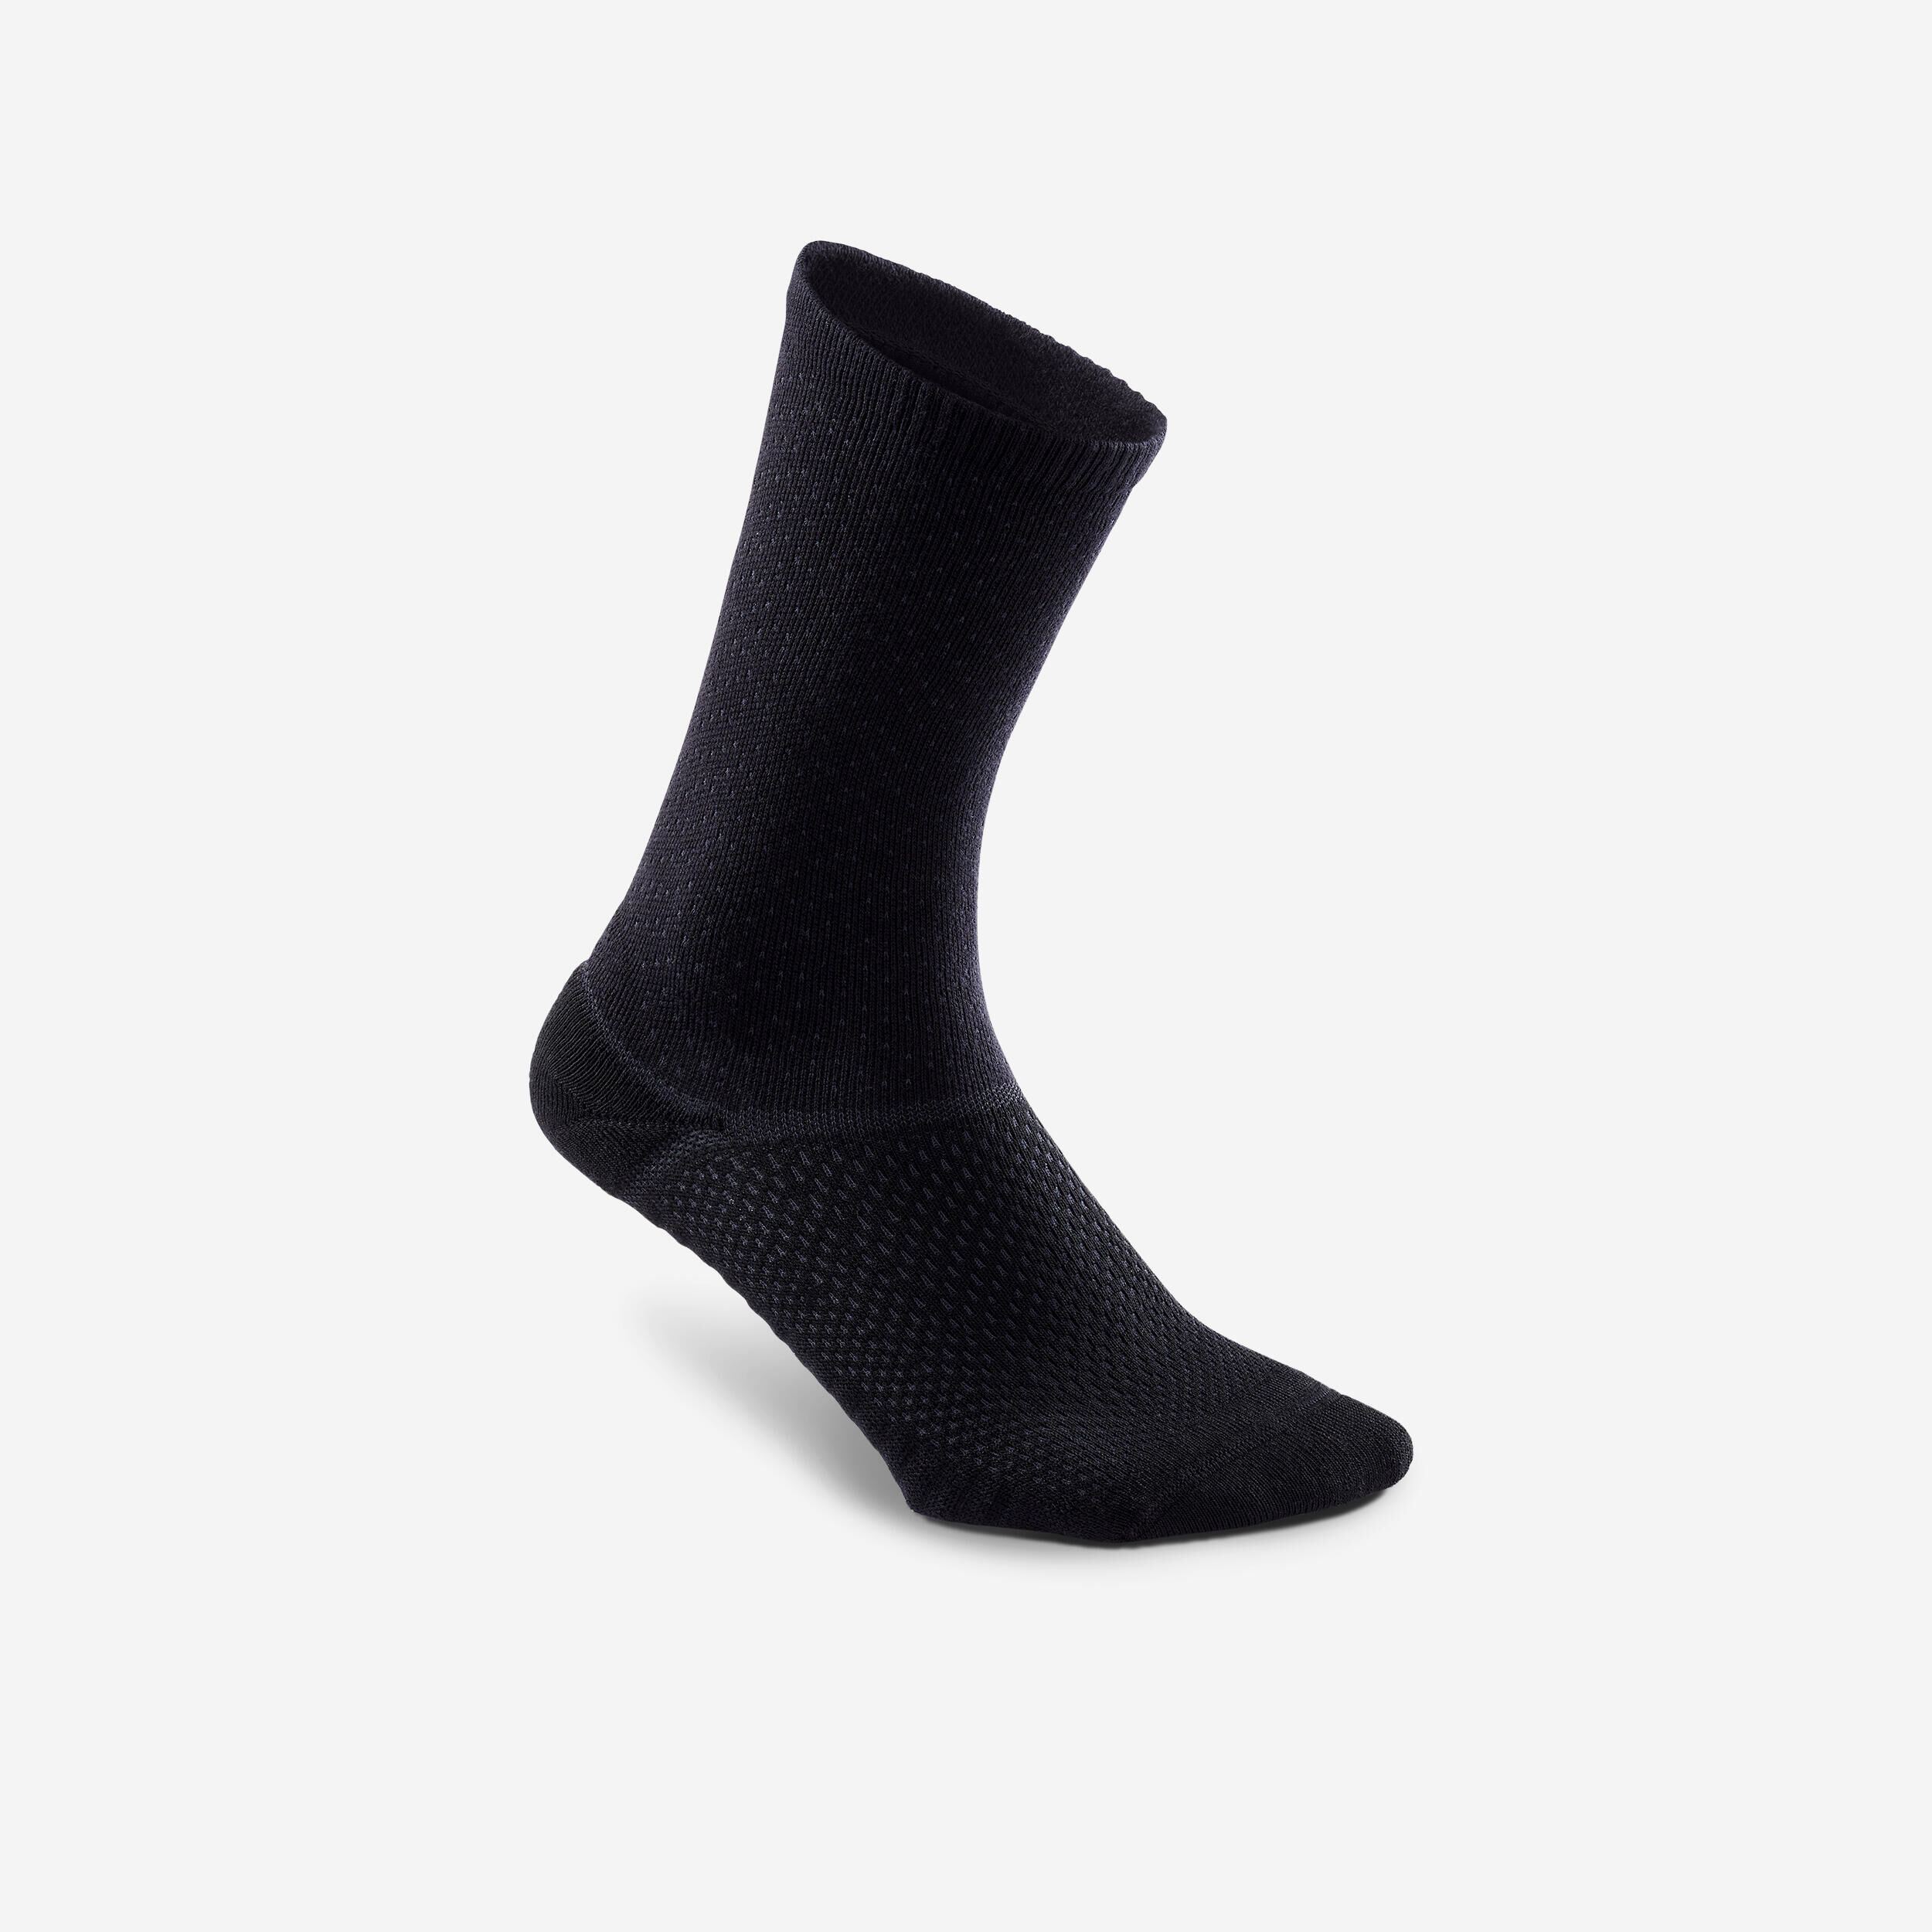 NEWFEEL Knee-length socks - pack of 2 pairs - black